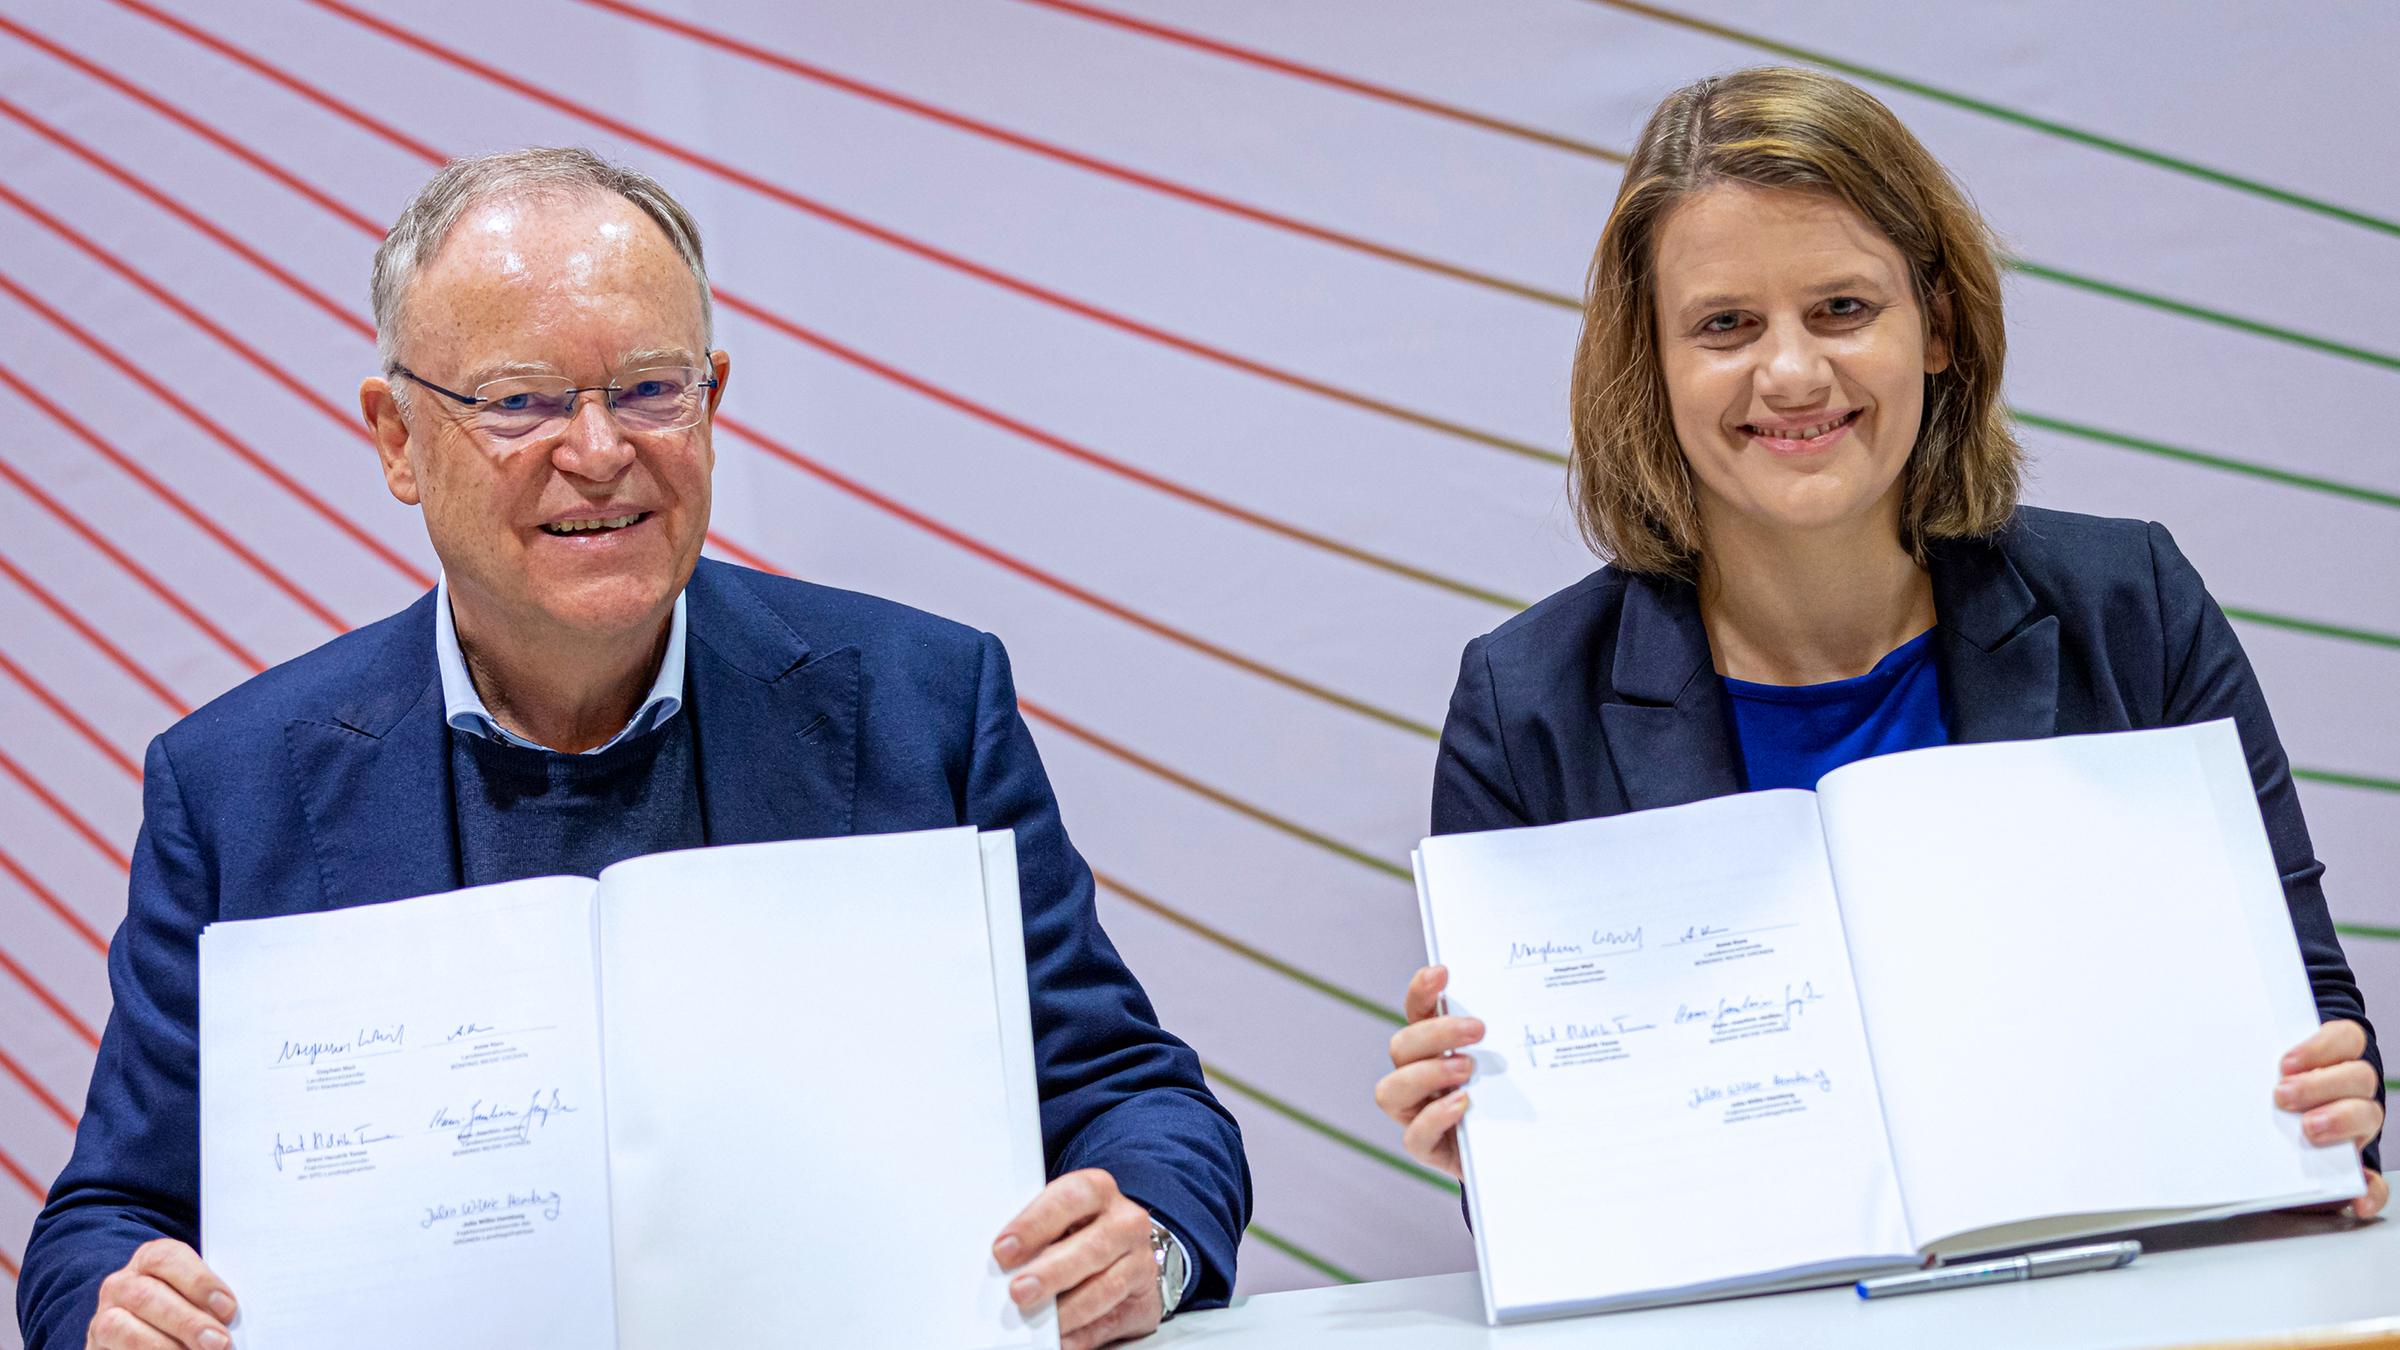 Unterzeichnung des Koalitionsvertrags von SPD und Grünen in Niedersachsen